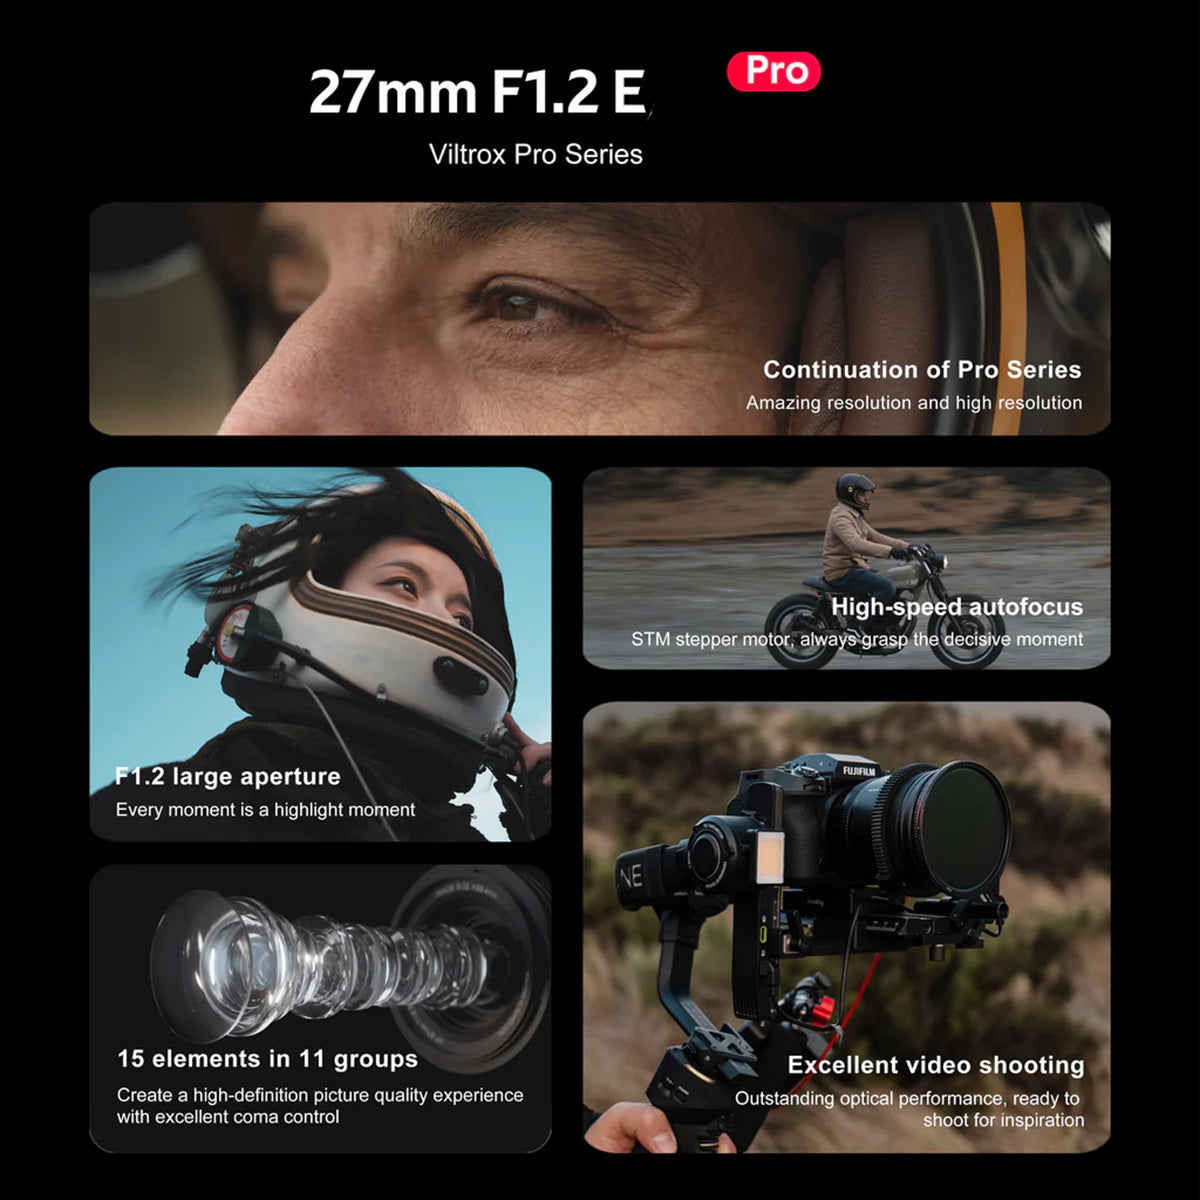 Viltrox Auto Focus 27mm f1.2E PRO Prime Lens Sony APS-C E-Mount VL-AF2712-E